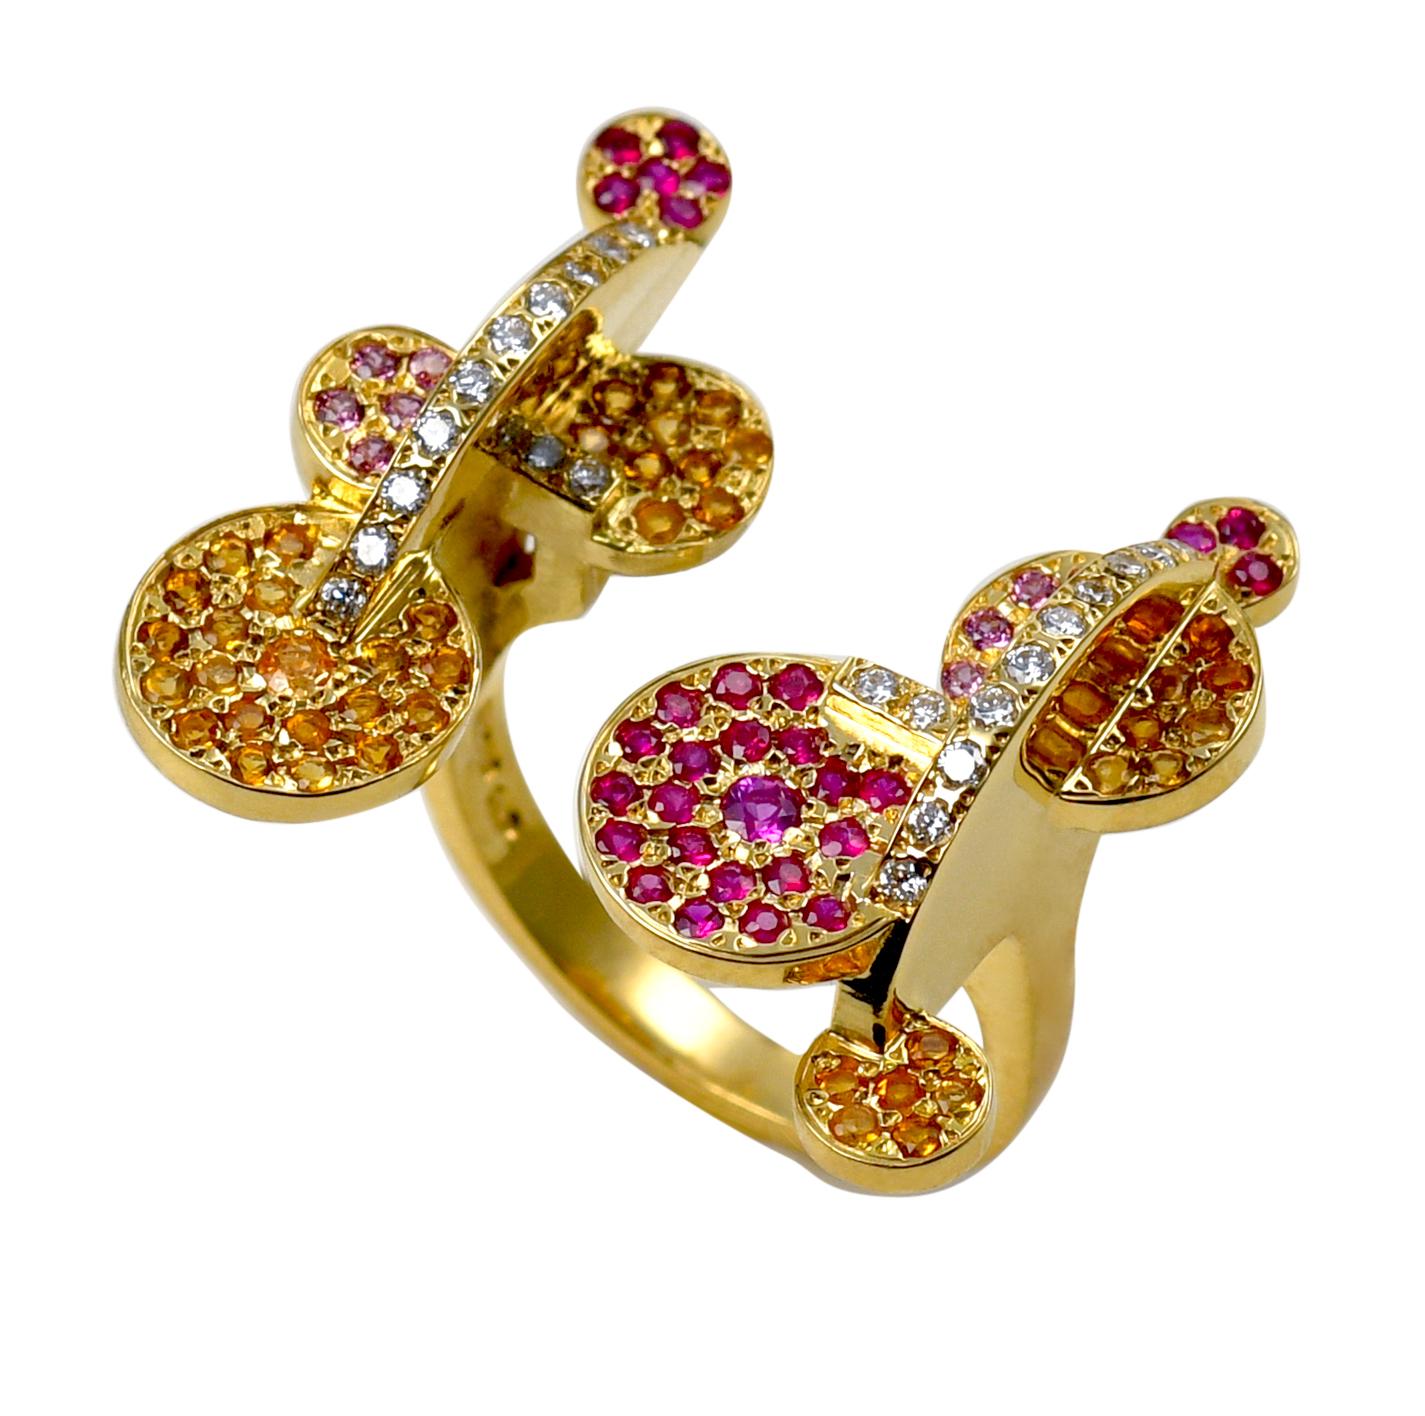 Maria Kotsoni, Zeitgenössischer skulpturaler Ring aus 18k Gold mit farbigen Edelsteinen und Diamanten